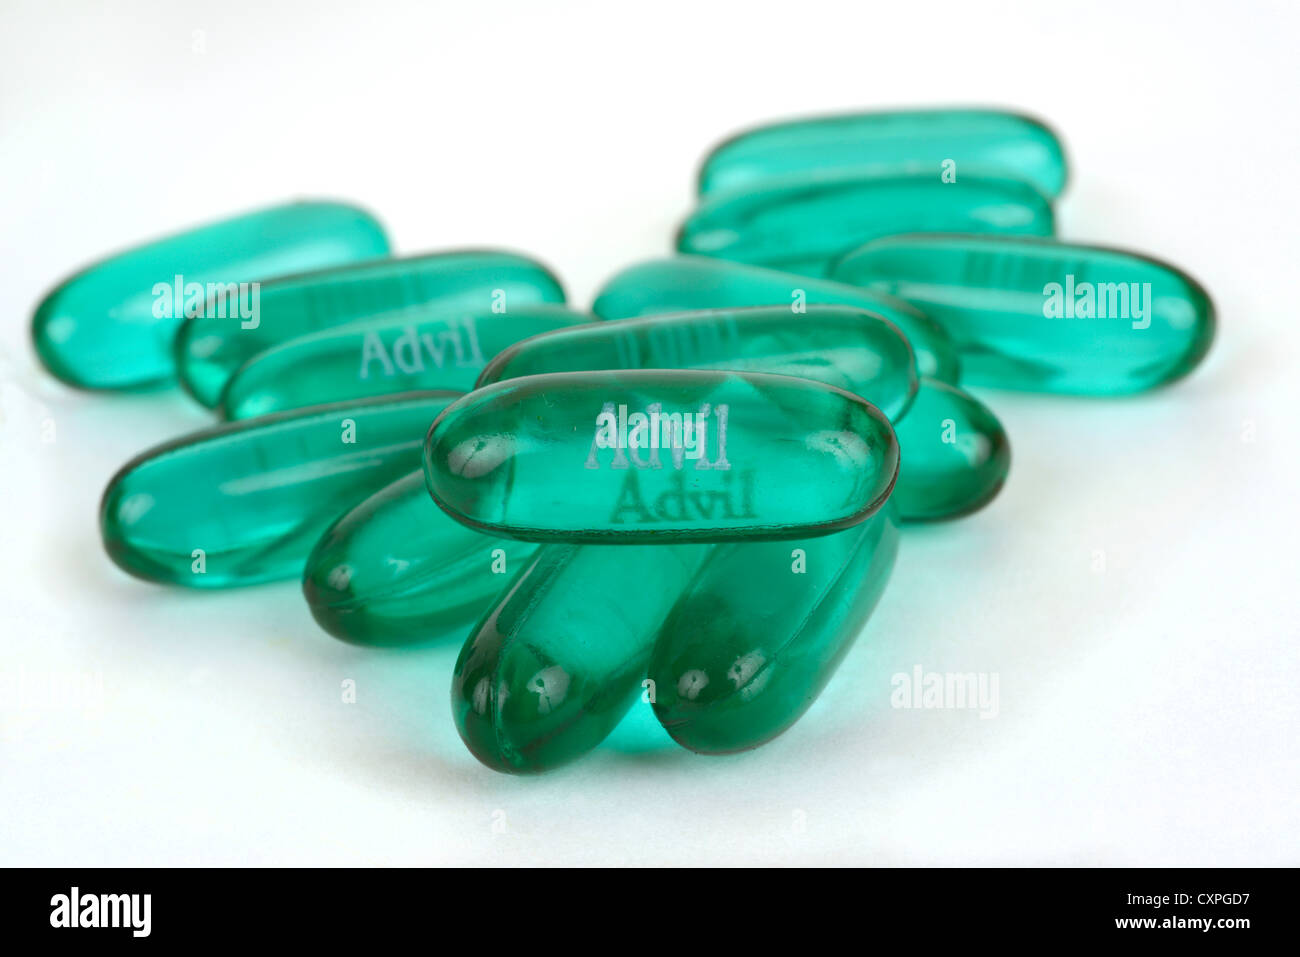 L'Advil gel liquide capsules Photo Stock - Alamy